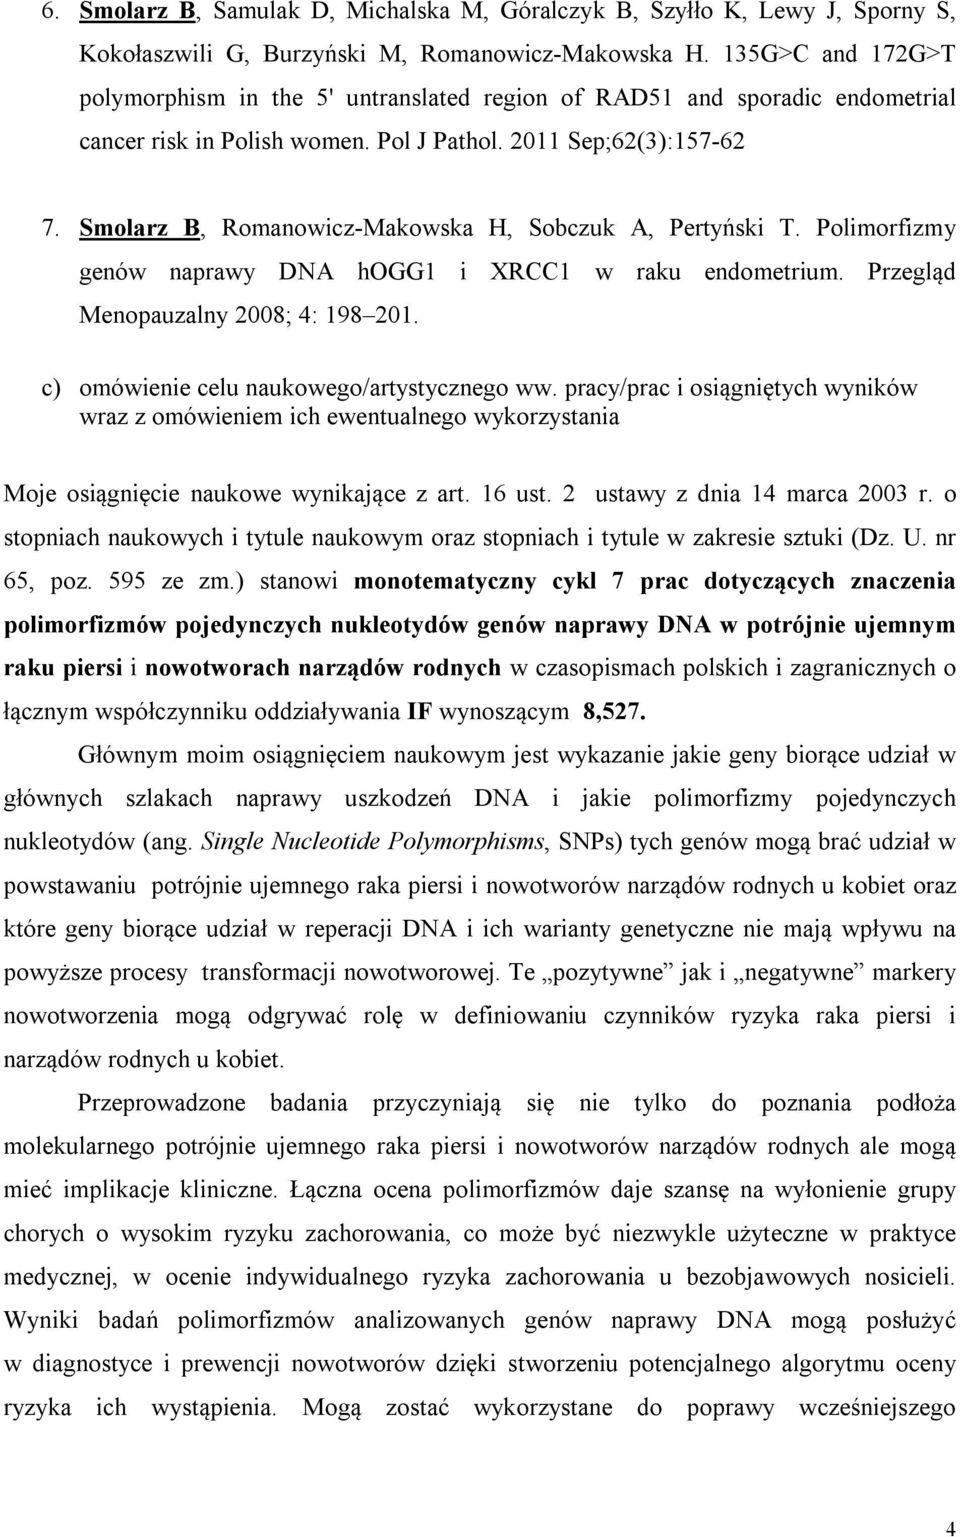 Smolarz B, Romanowicz-Makowska H, Sobczuk A, Pertyński T. Polimorfizmy genów naprawy DNA hogg1 i XRCC1 w raku endometrium. Przegląd Menopauzalny 2008; 4: 198 201.